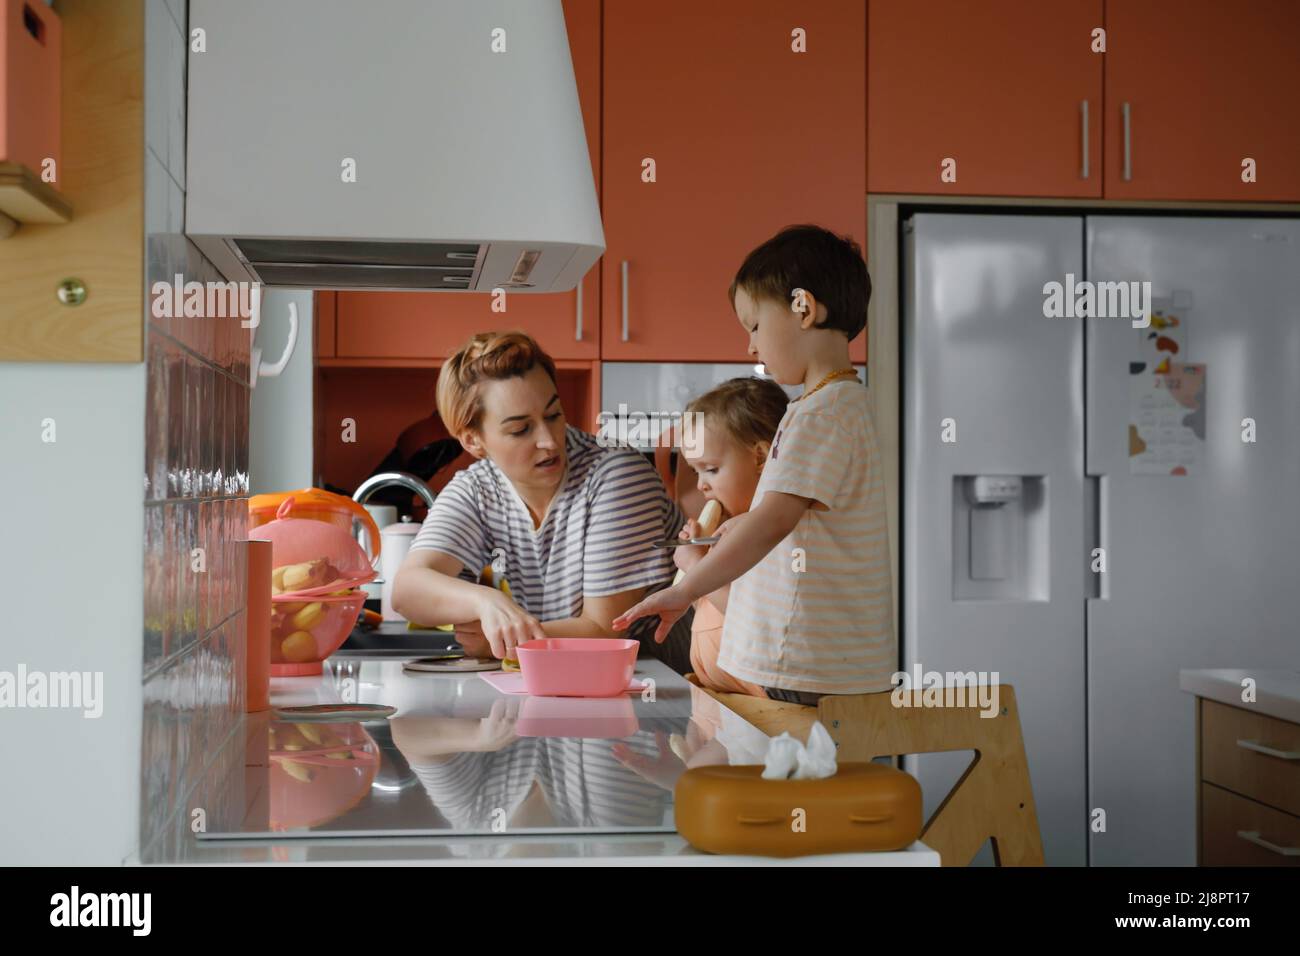 Famiglia felice con i bambini che cucinano sulla cucina moderna. Bambini che tagliano Macedonia di frutta, preparando cibo con madre e padre. Mangiare sano a casa Foto Stock